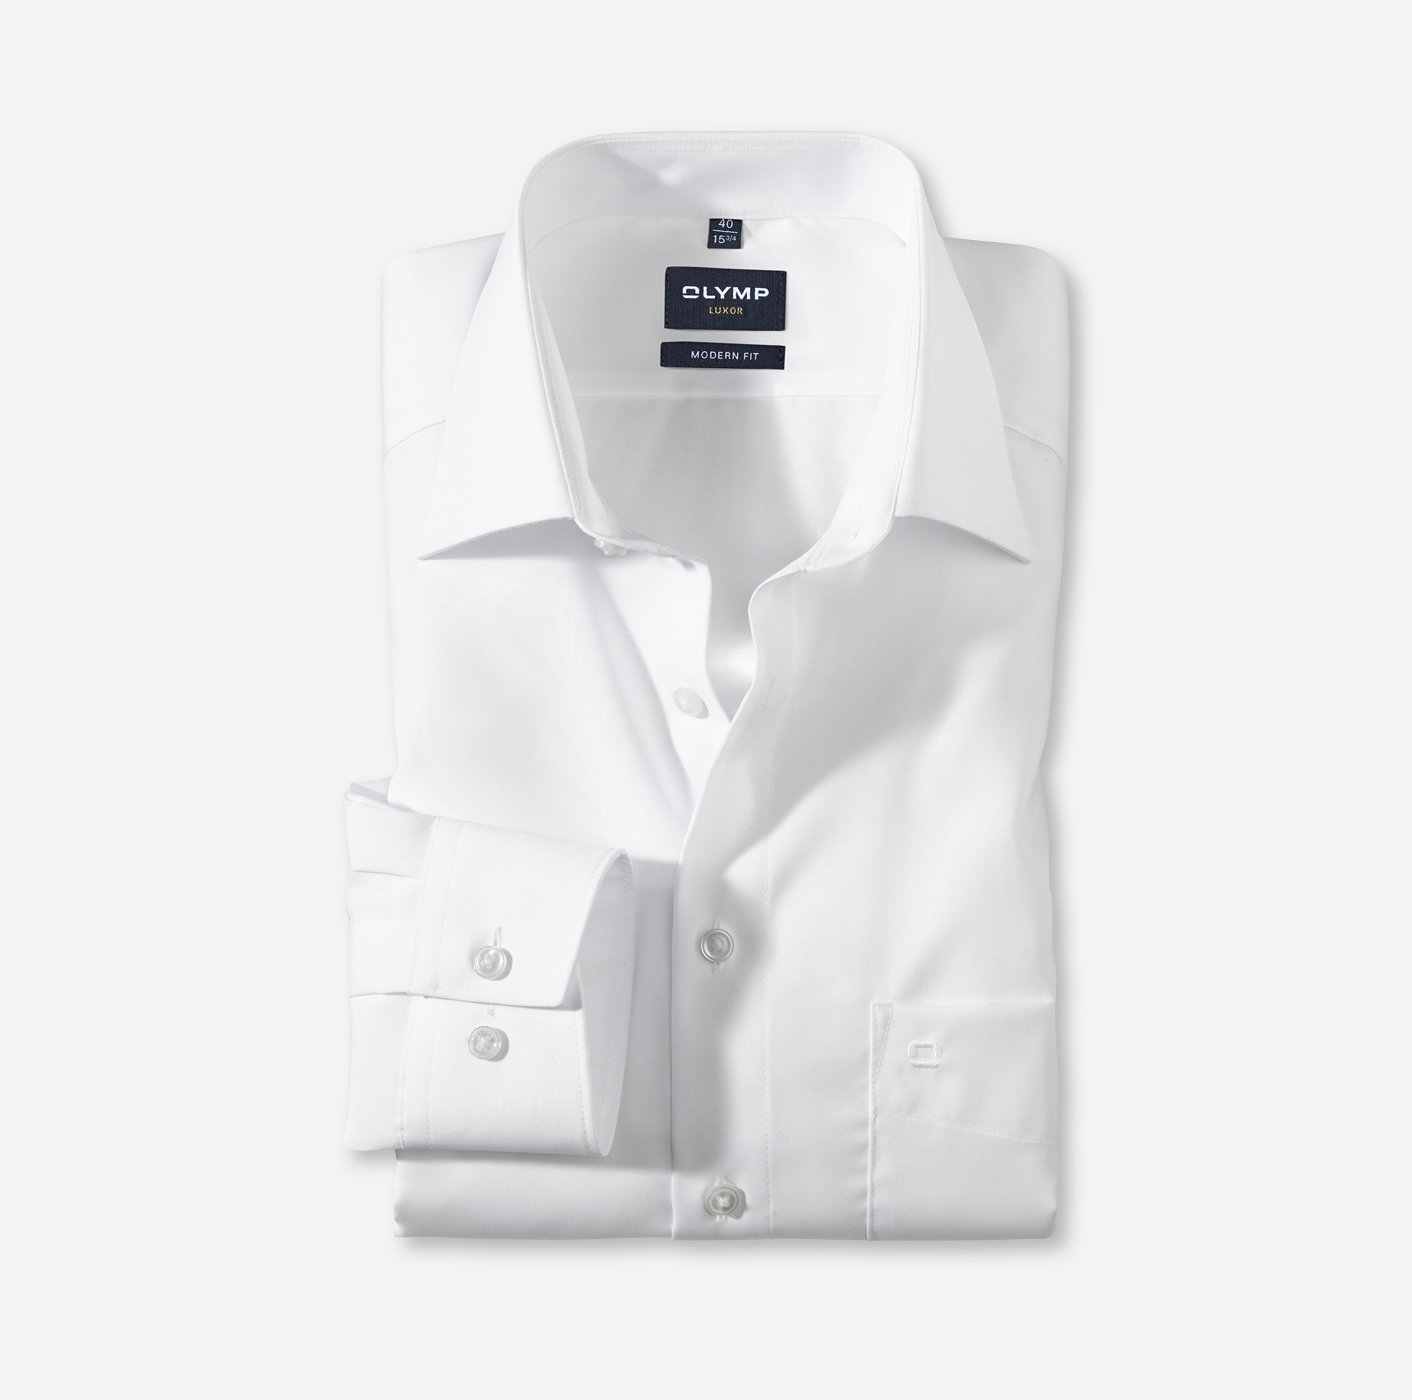 noodzaak Controversieel Beukende Zakelijk overhemd | OLYMP Luxor, modern fit, Extra korte mouw, New Kent |  Wit - 03005800